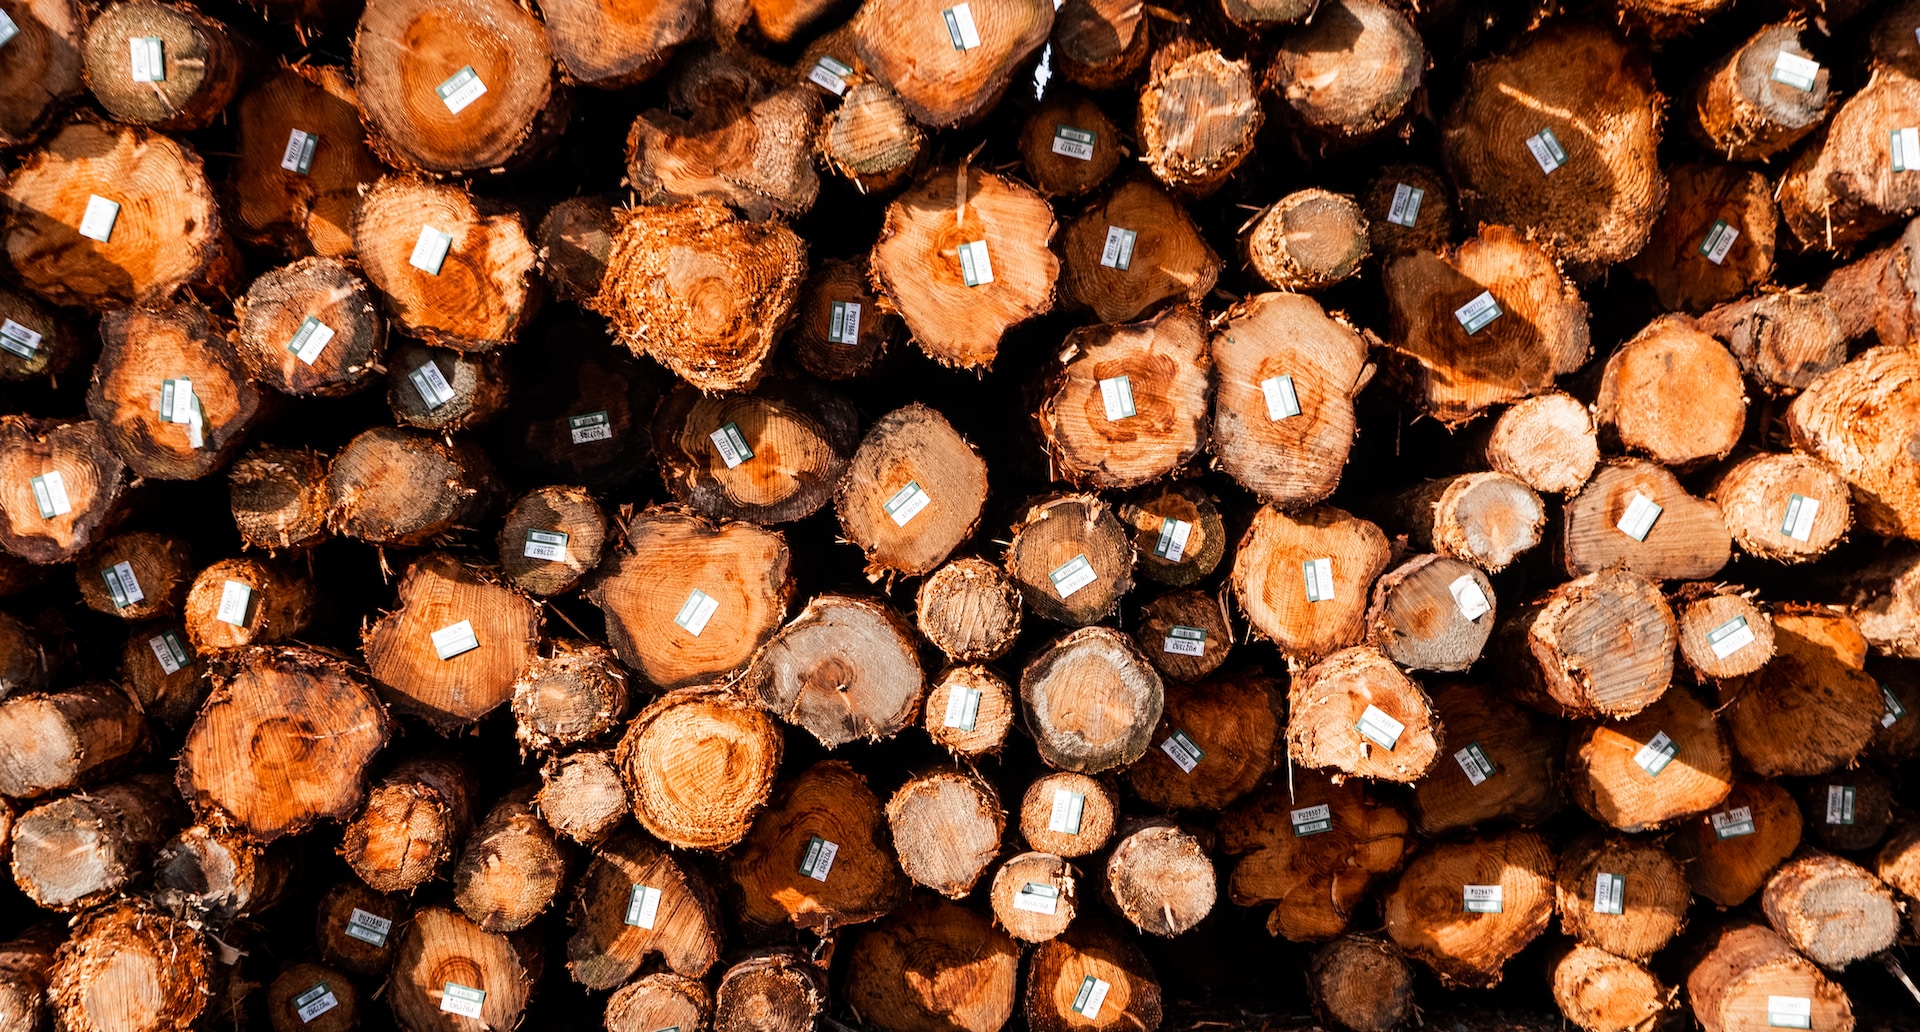 Deforestazione: solo il 3% delle aziende garantisce piena tracciabilità